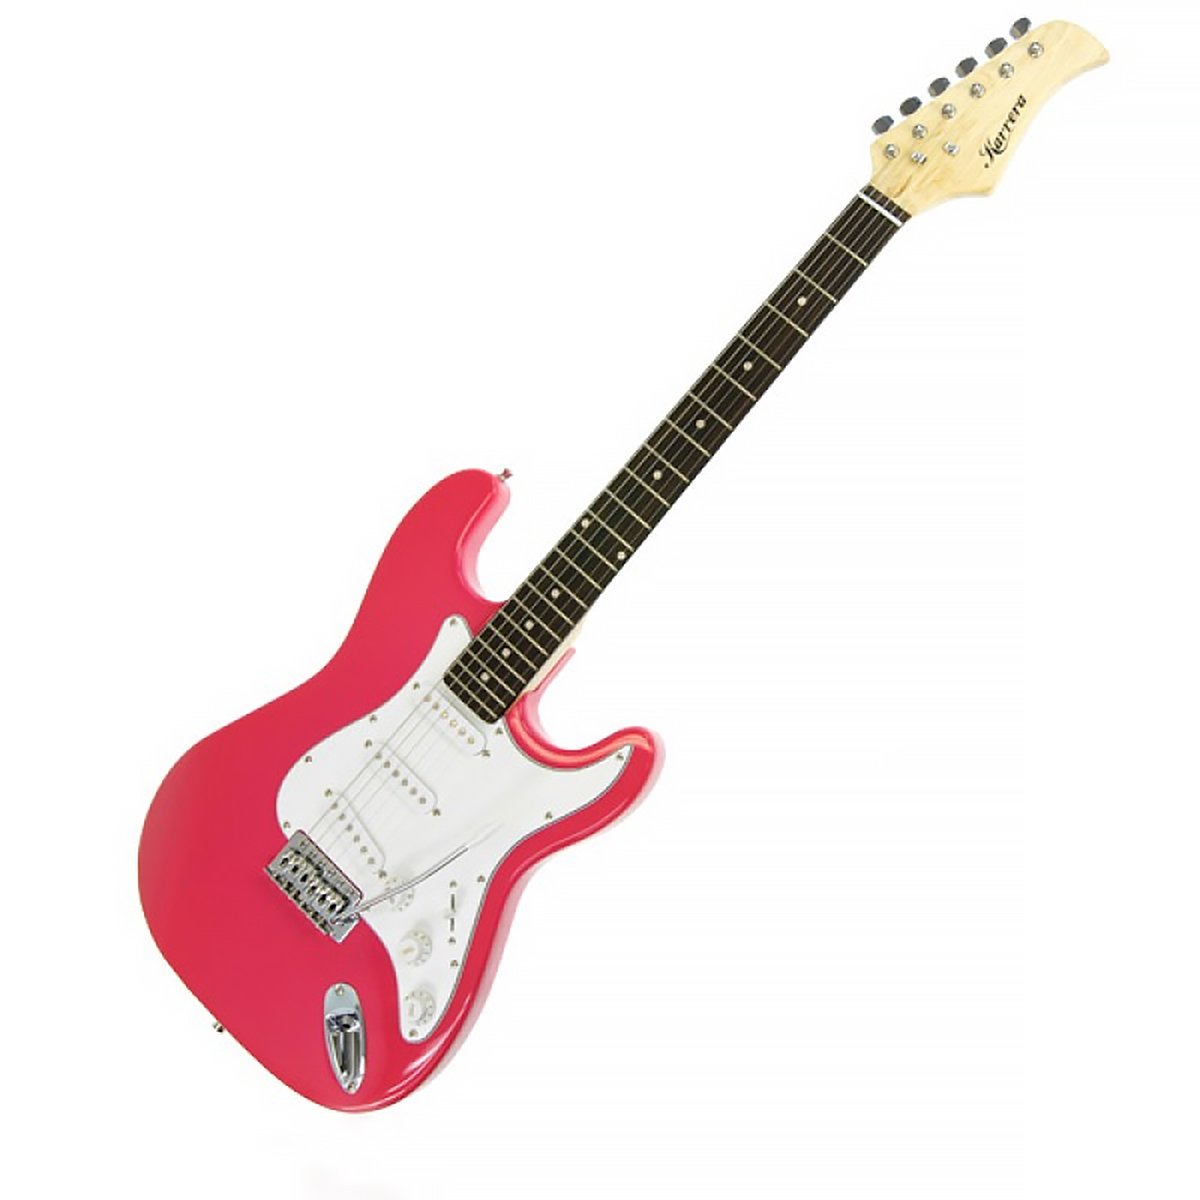 Karrera 39in Electric Guitar - Pink 1